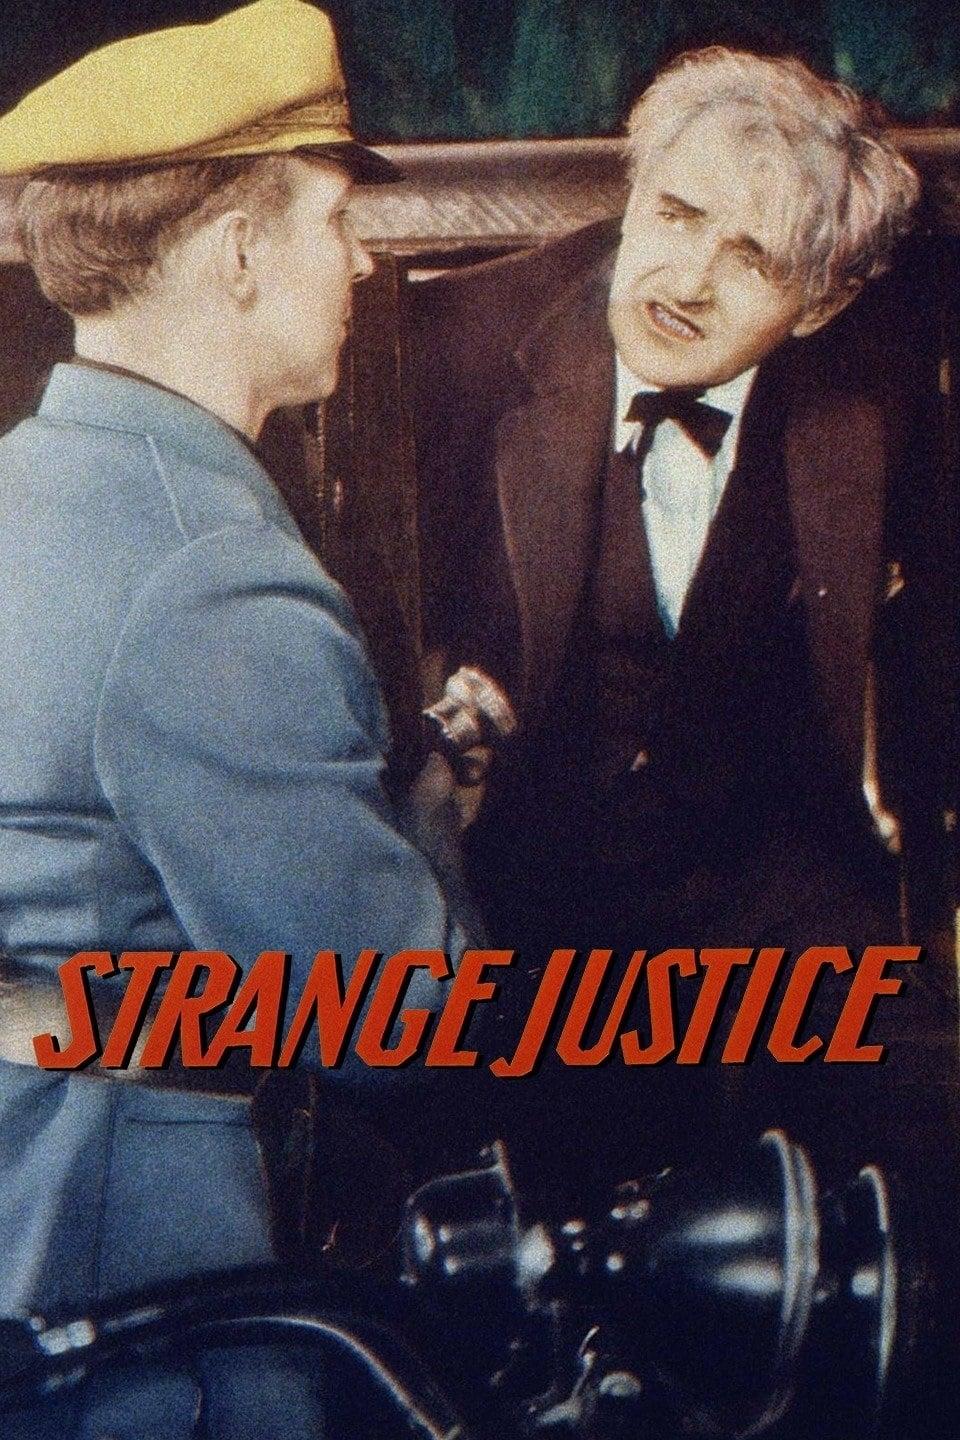 Strange Justice poster